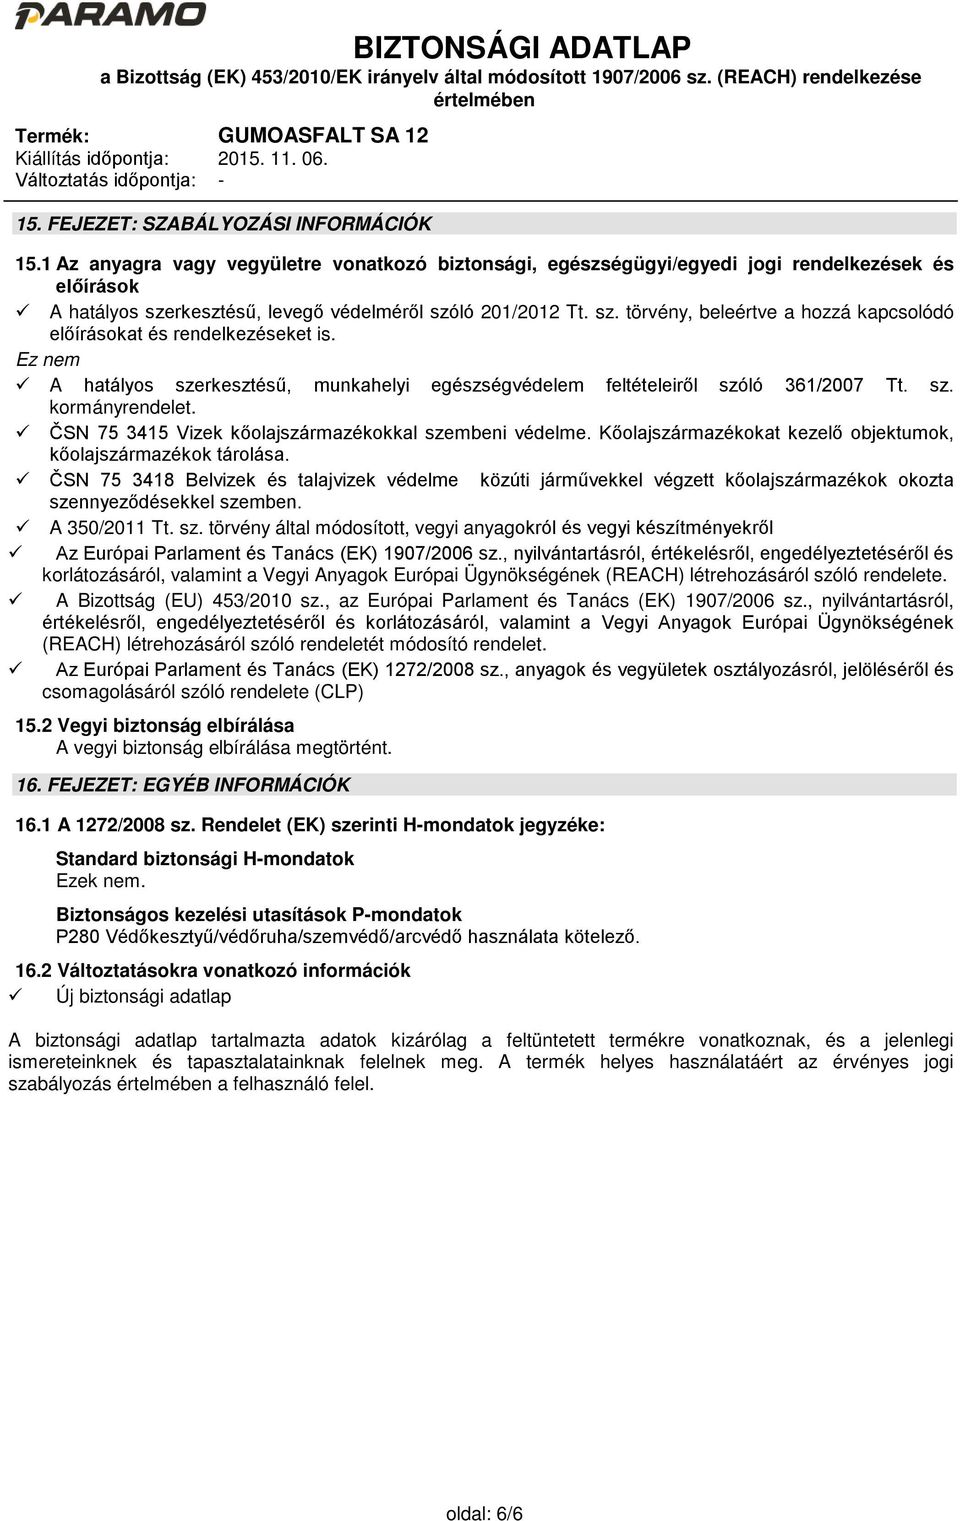 Ez nem A hatályos szerkesztésű, munkahelyi egészségvédelem feltételeiről szóló 361/2007 Tt. sz. kormányrendelet. ČSN 75 3415 Vizek kőolajszármazékokkal szembeni védelme.